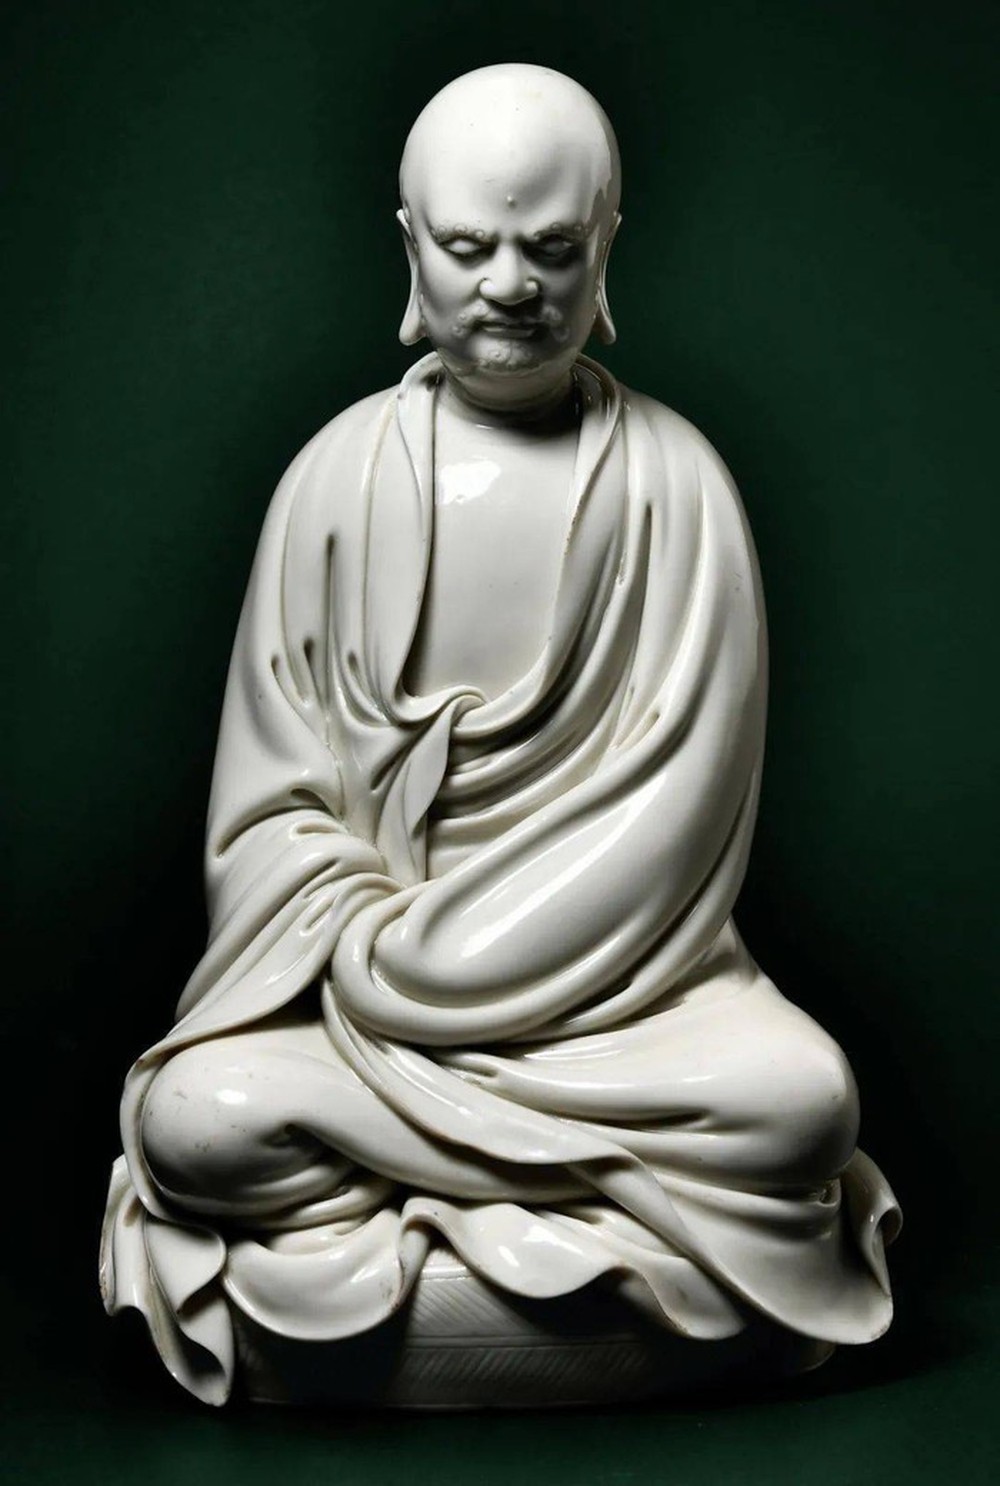 Tình cờ mua bức tượng cũ với giá 1,3 triệu đồng, người đàn ông không ngờ bán được giá gấp 30.000 lần - Ảnh 6.